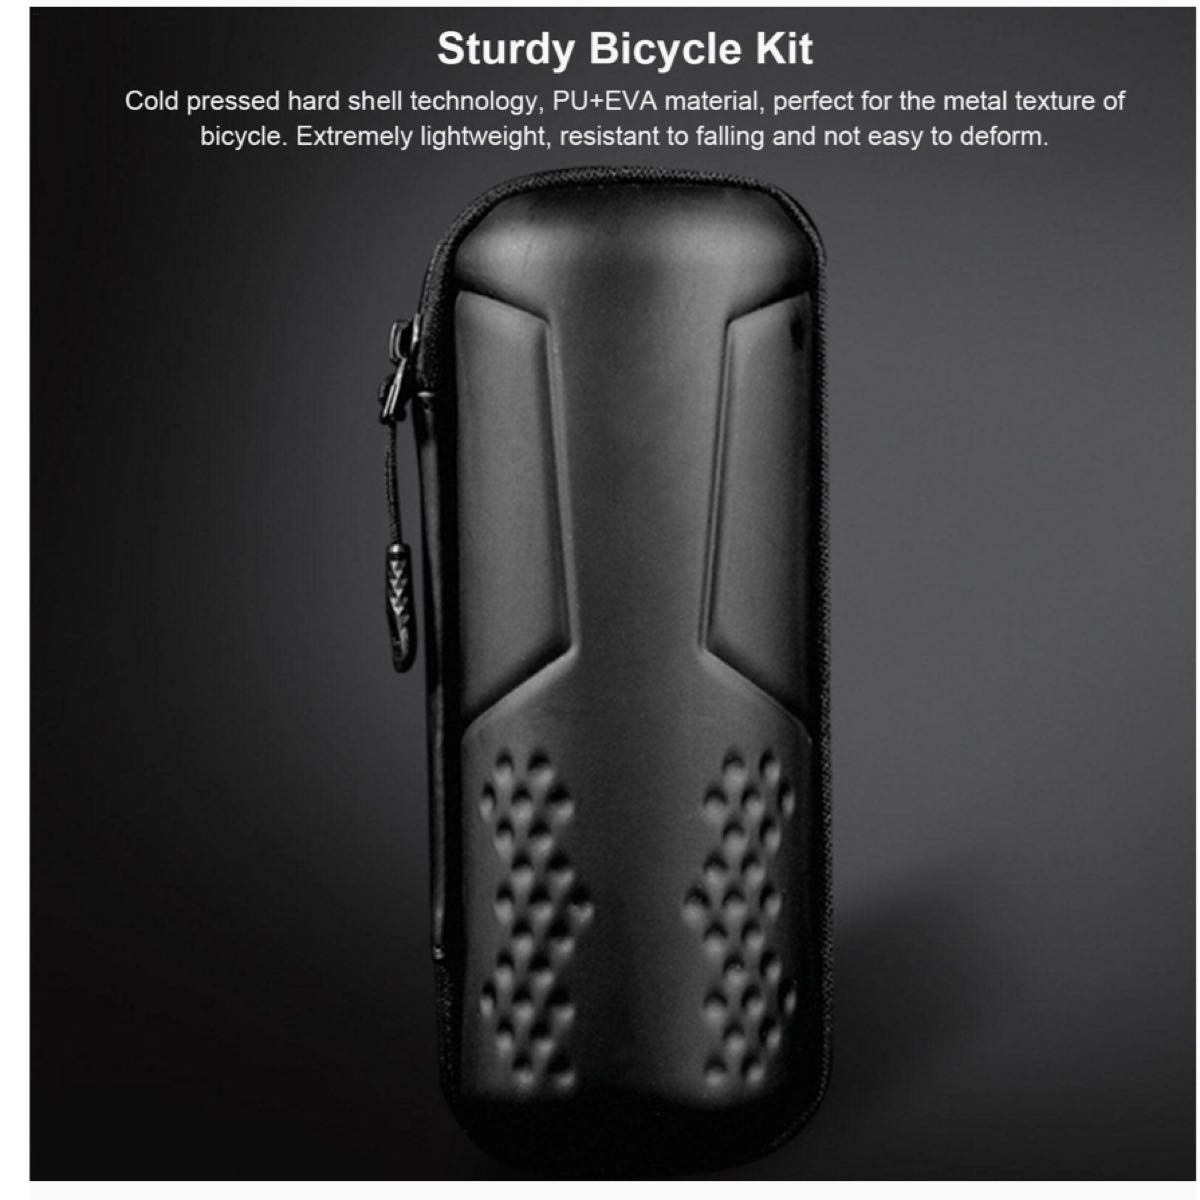 ツールボトル ボトル型 ツールケース 防水 バッグ 大容量 ロードバイク サイクリング バイク カーボン サイクリングツール 